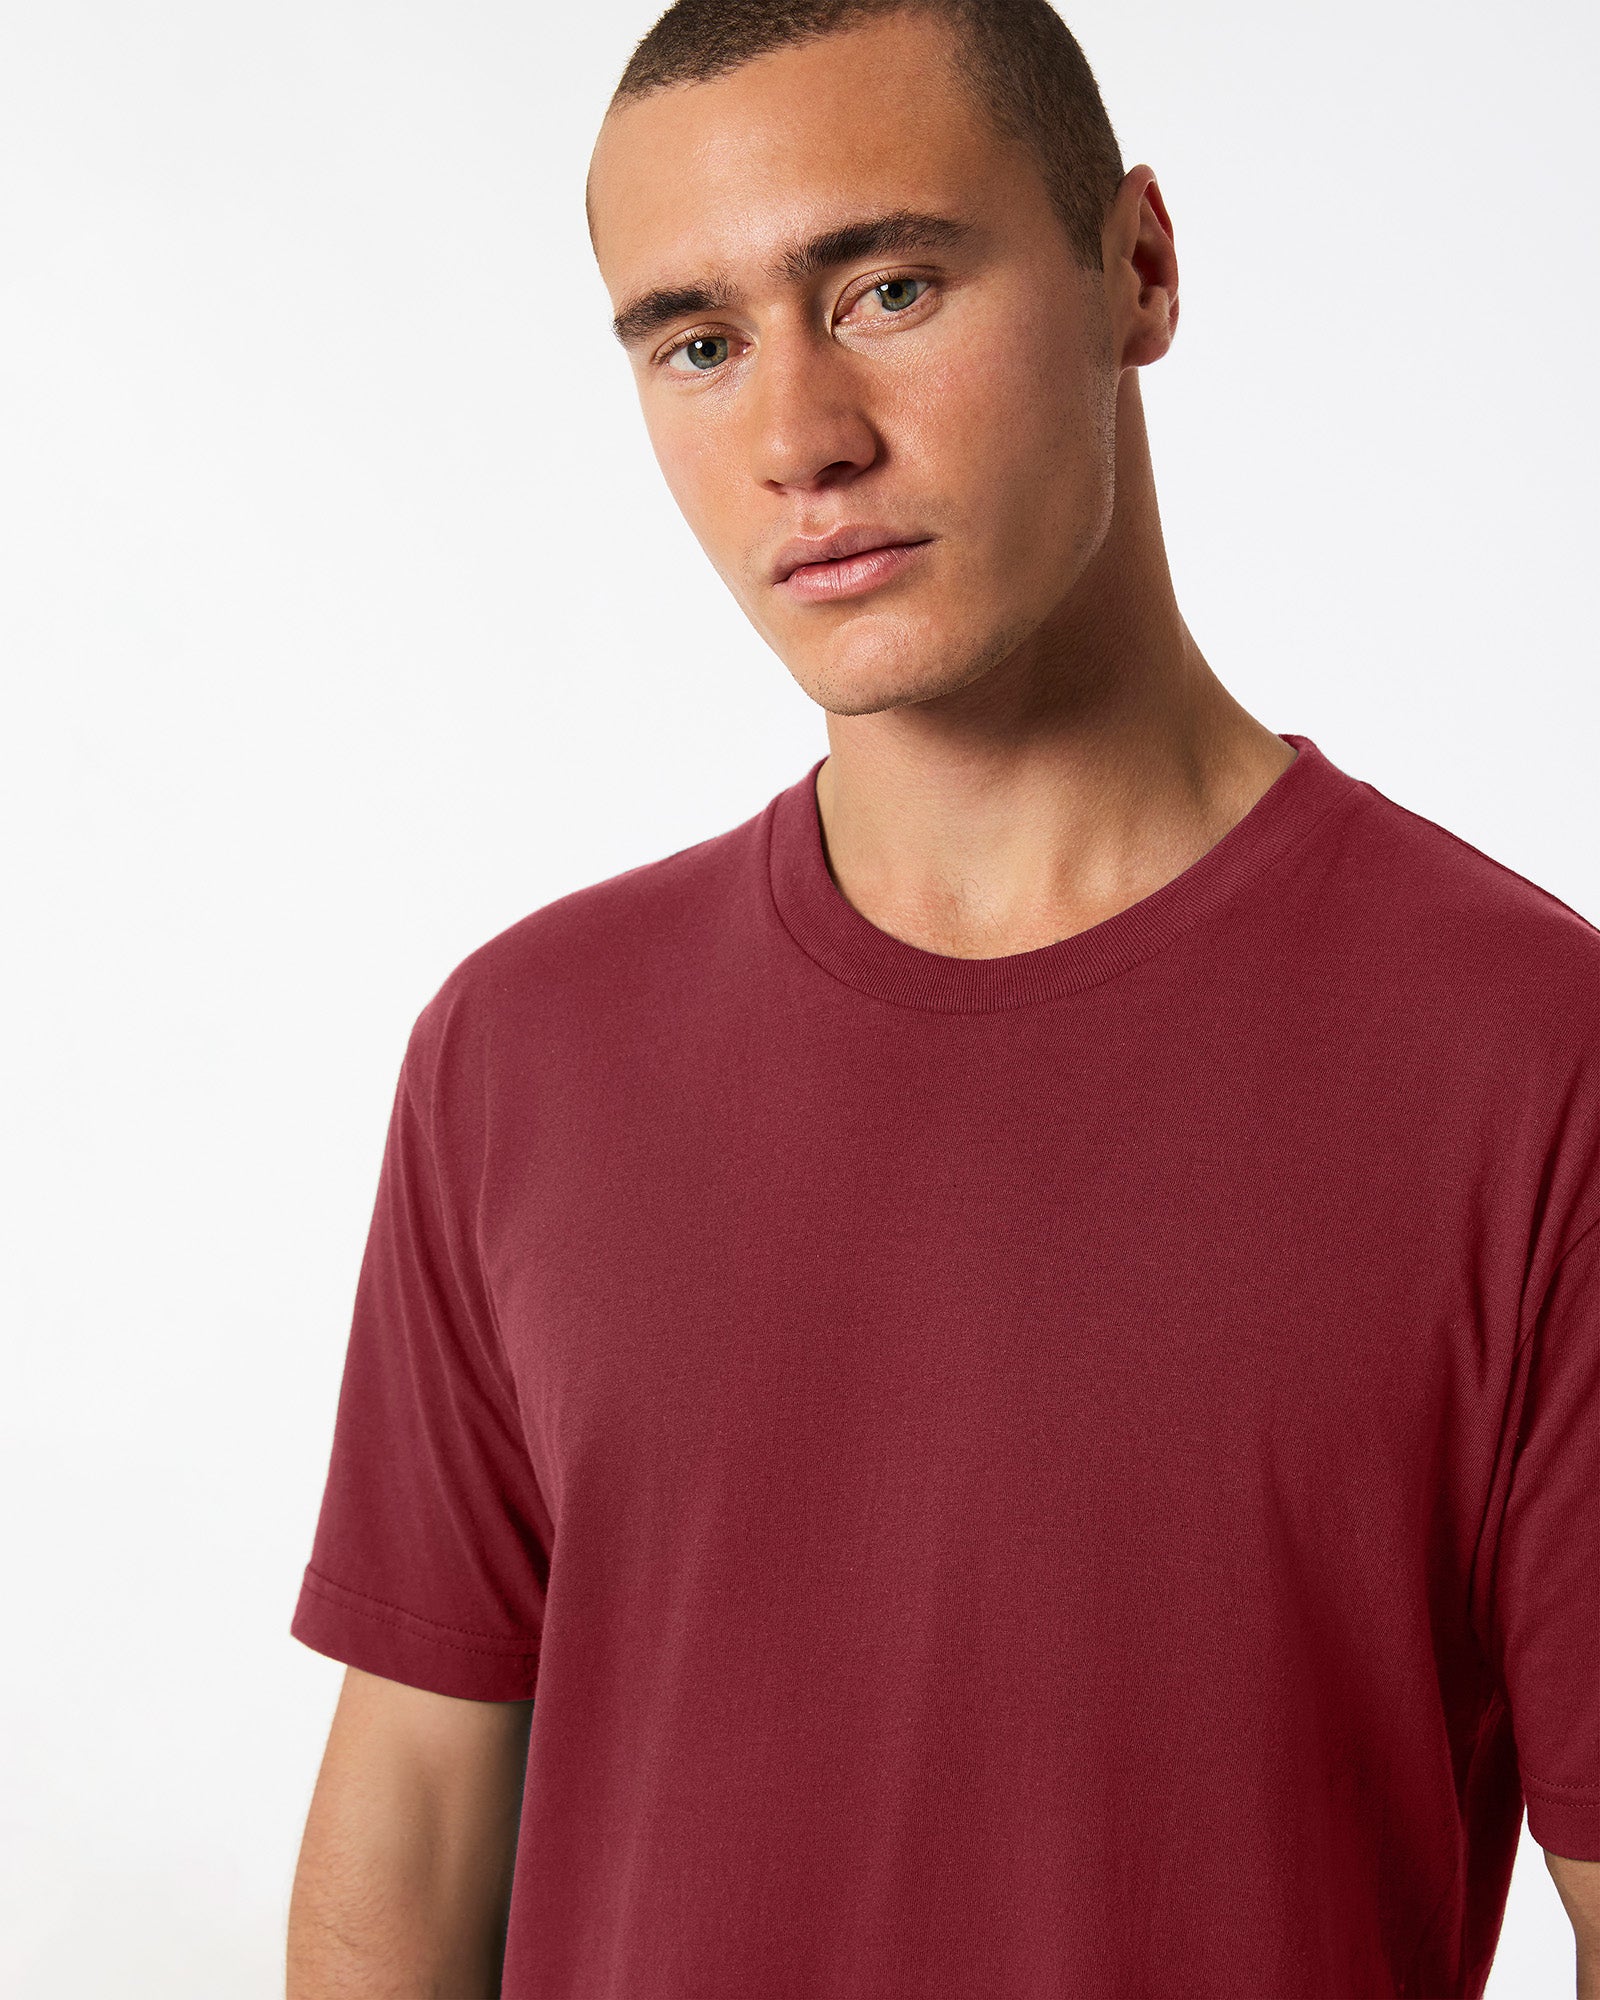 Fine Jersey Unisex Short Sleeve T-Shirt - Cranberry